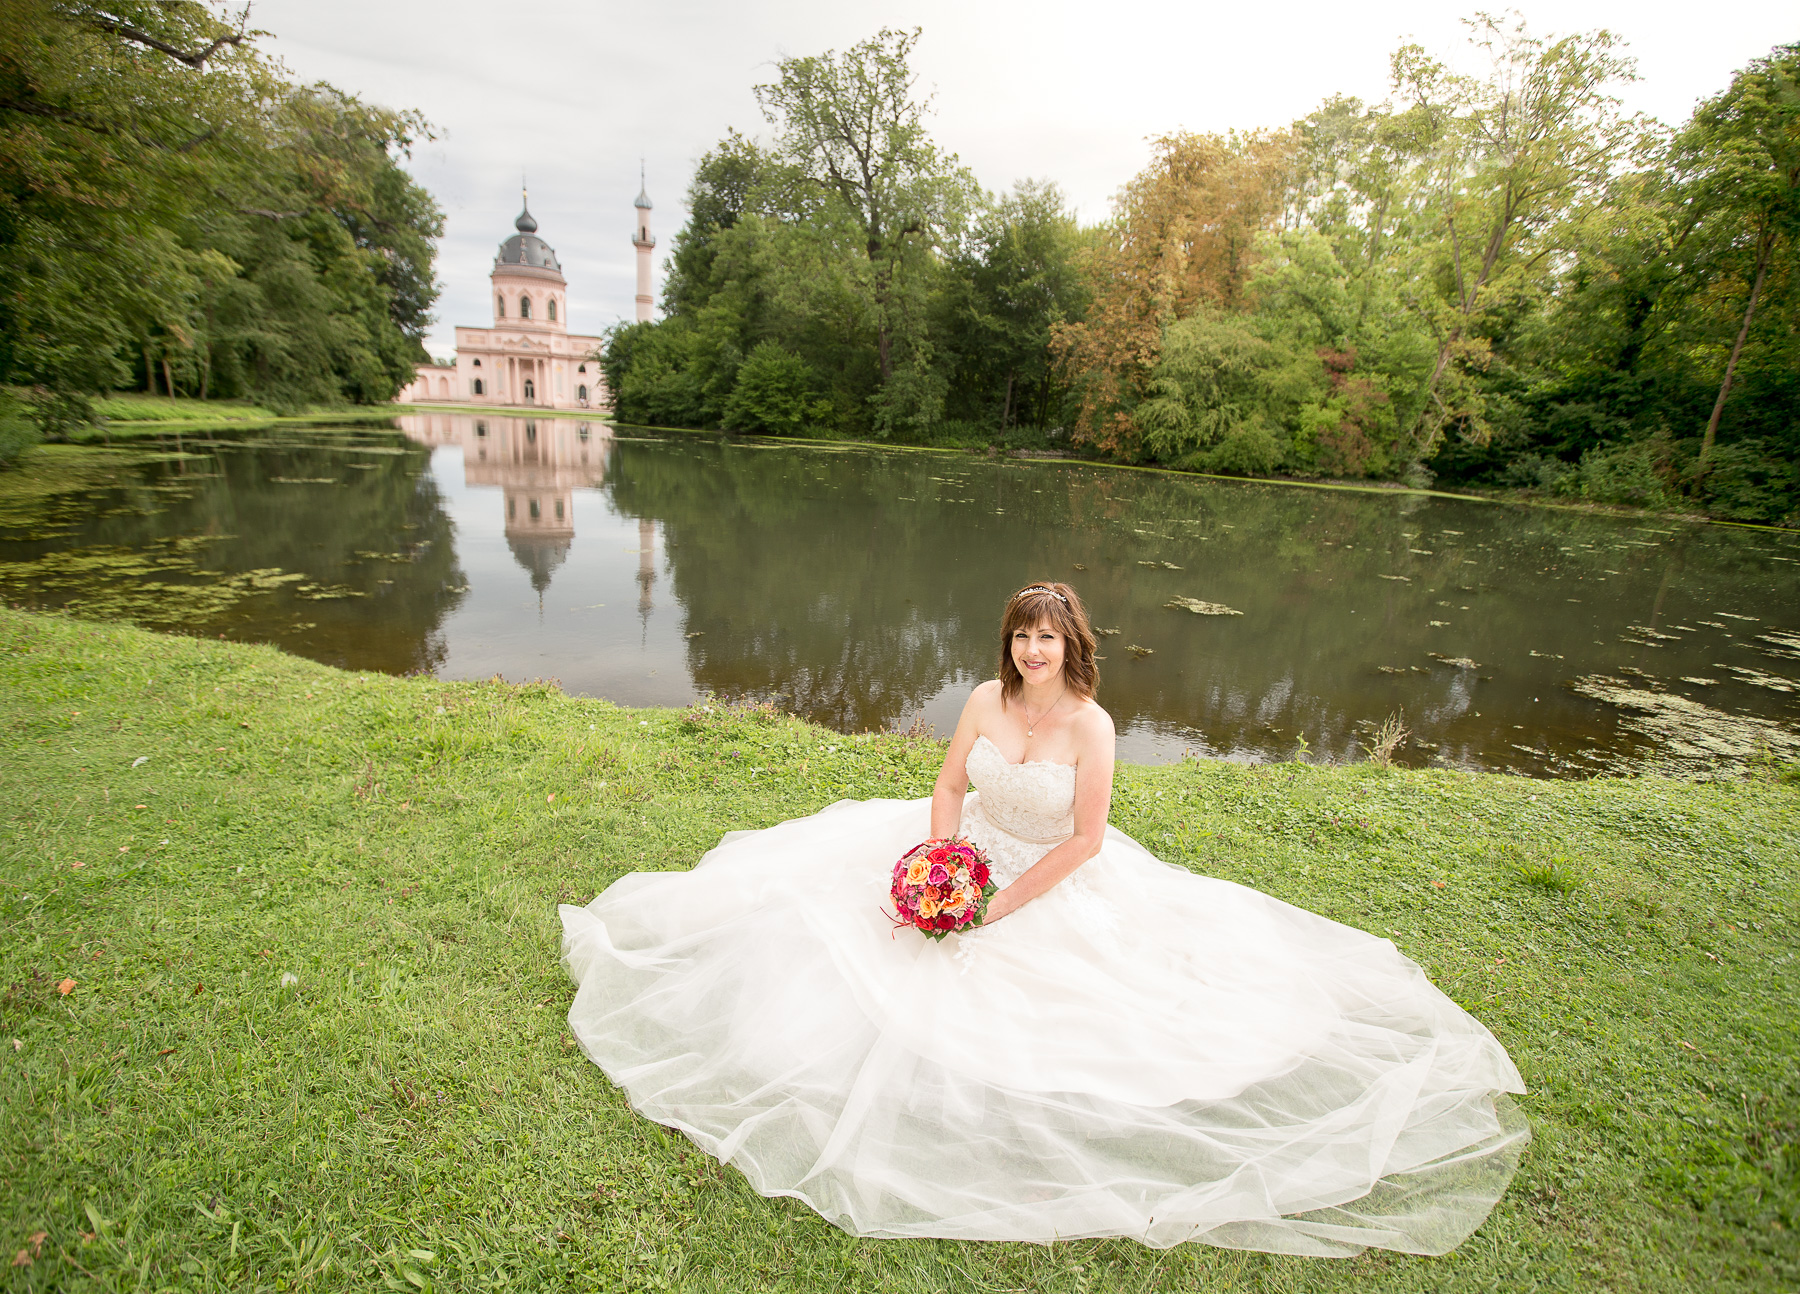 Die Braut sitzt auf der Wiese des Schwetzinger Schlossgartens. Sie hat ein prächtiges Brautkleid an und hält einen Brautstrauß in ihren Händen. Im Hintergrund ist ein See und die Moschee des Schlossgartens sichtbar.